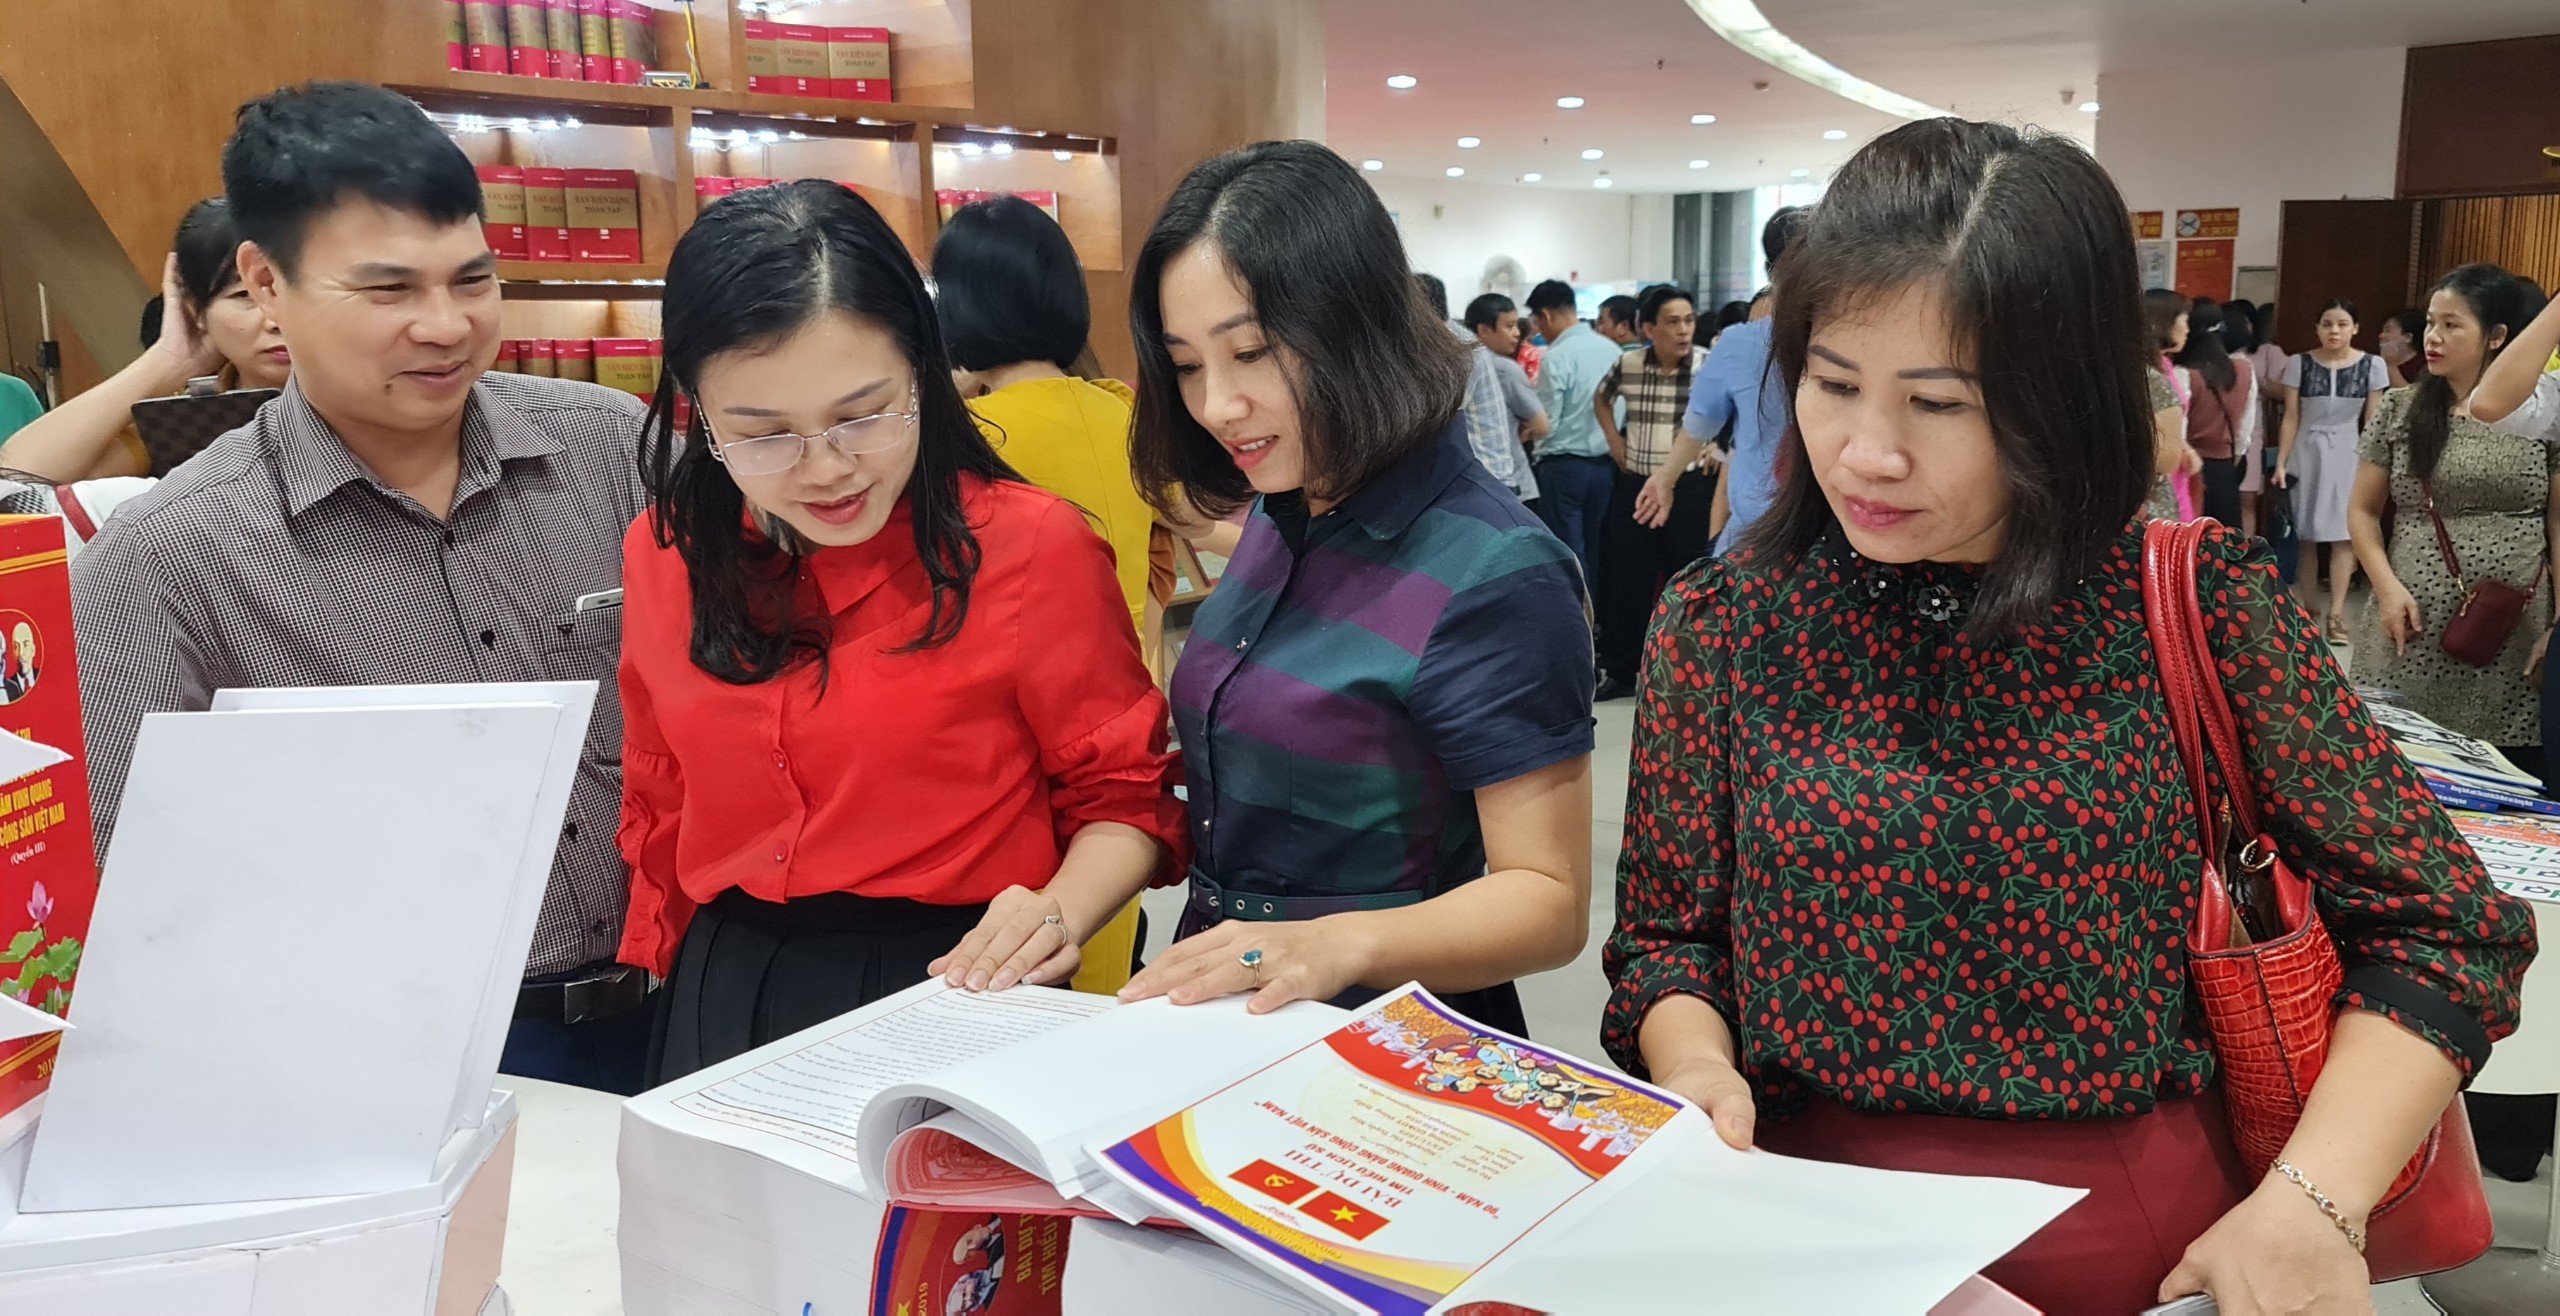 Triển lãm mang đến cơ hội tìm hiểu về quá trình hình thành, lịch sử đấu tranh cách mạng của Đảng cộng sản Việt Nam và Đảng bộ tỉnh Quảng Ninh qua các kỳ đại hội